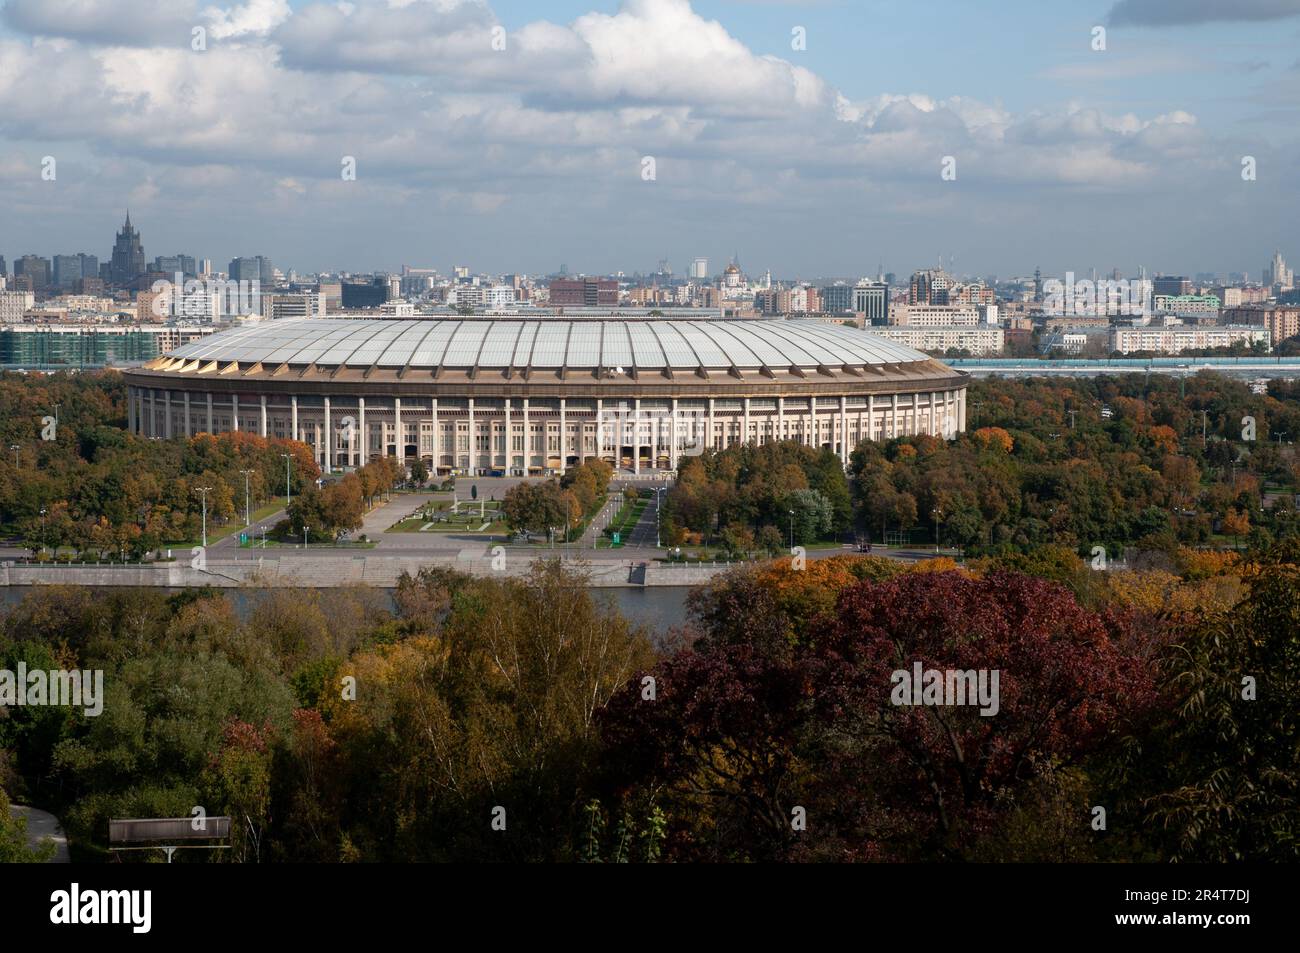 The Luzhniki Stadium in Moscowl Stock Photo